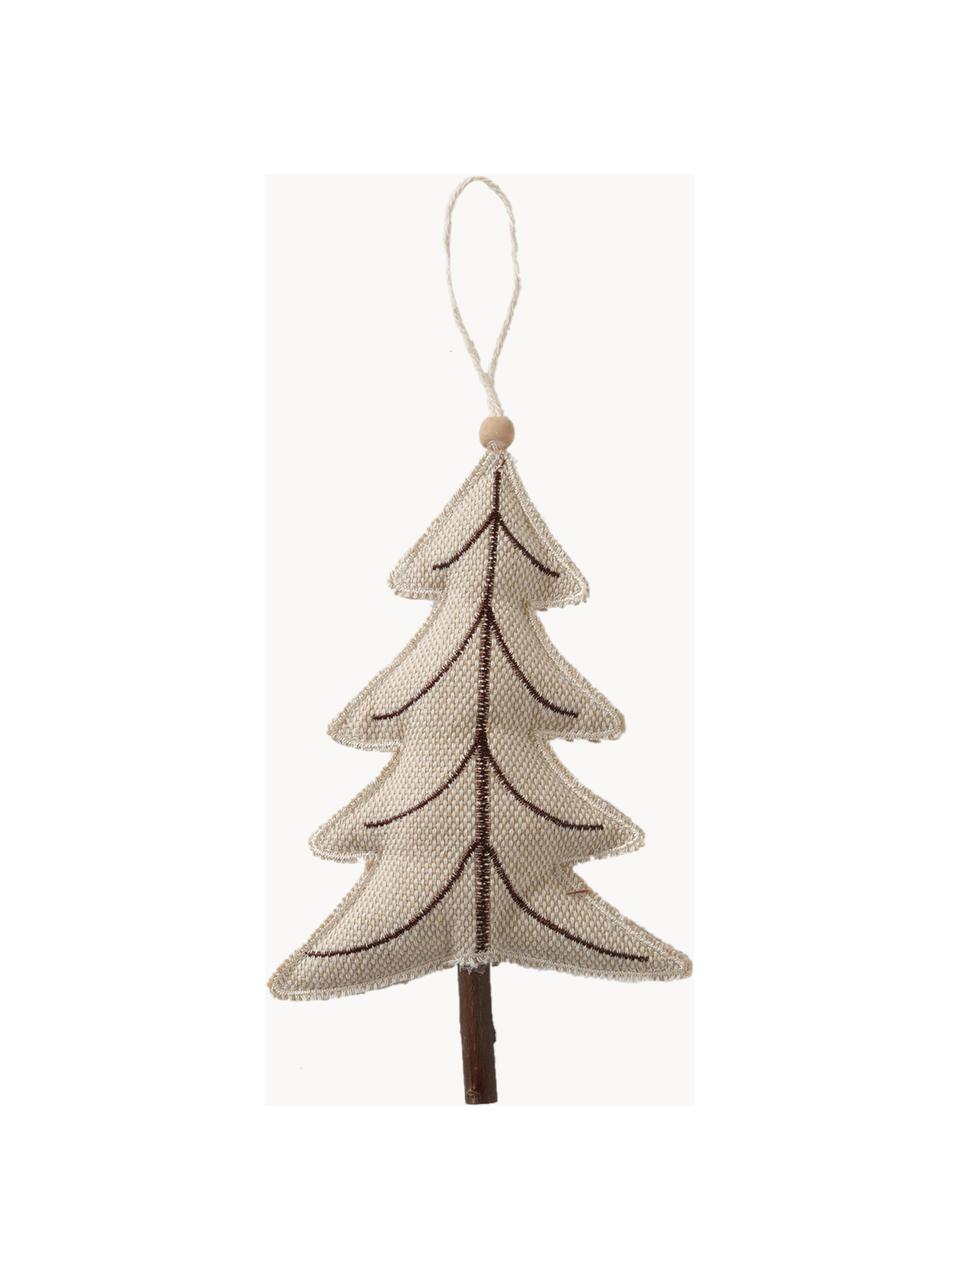 Kerstboomhangers Sivo, set van 4, Frame: schijnkastanjehout, Beige, hout, B 10 x H 22 cm